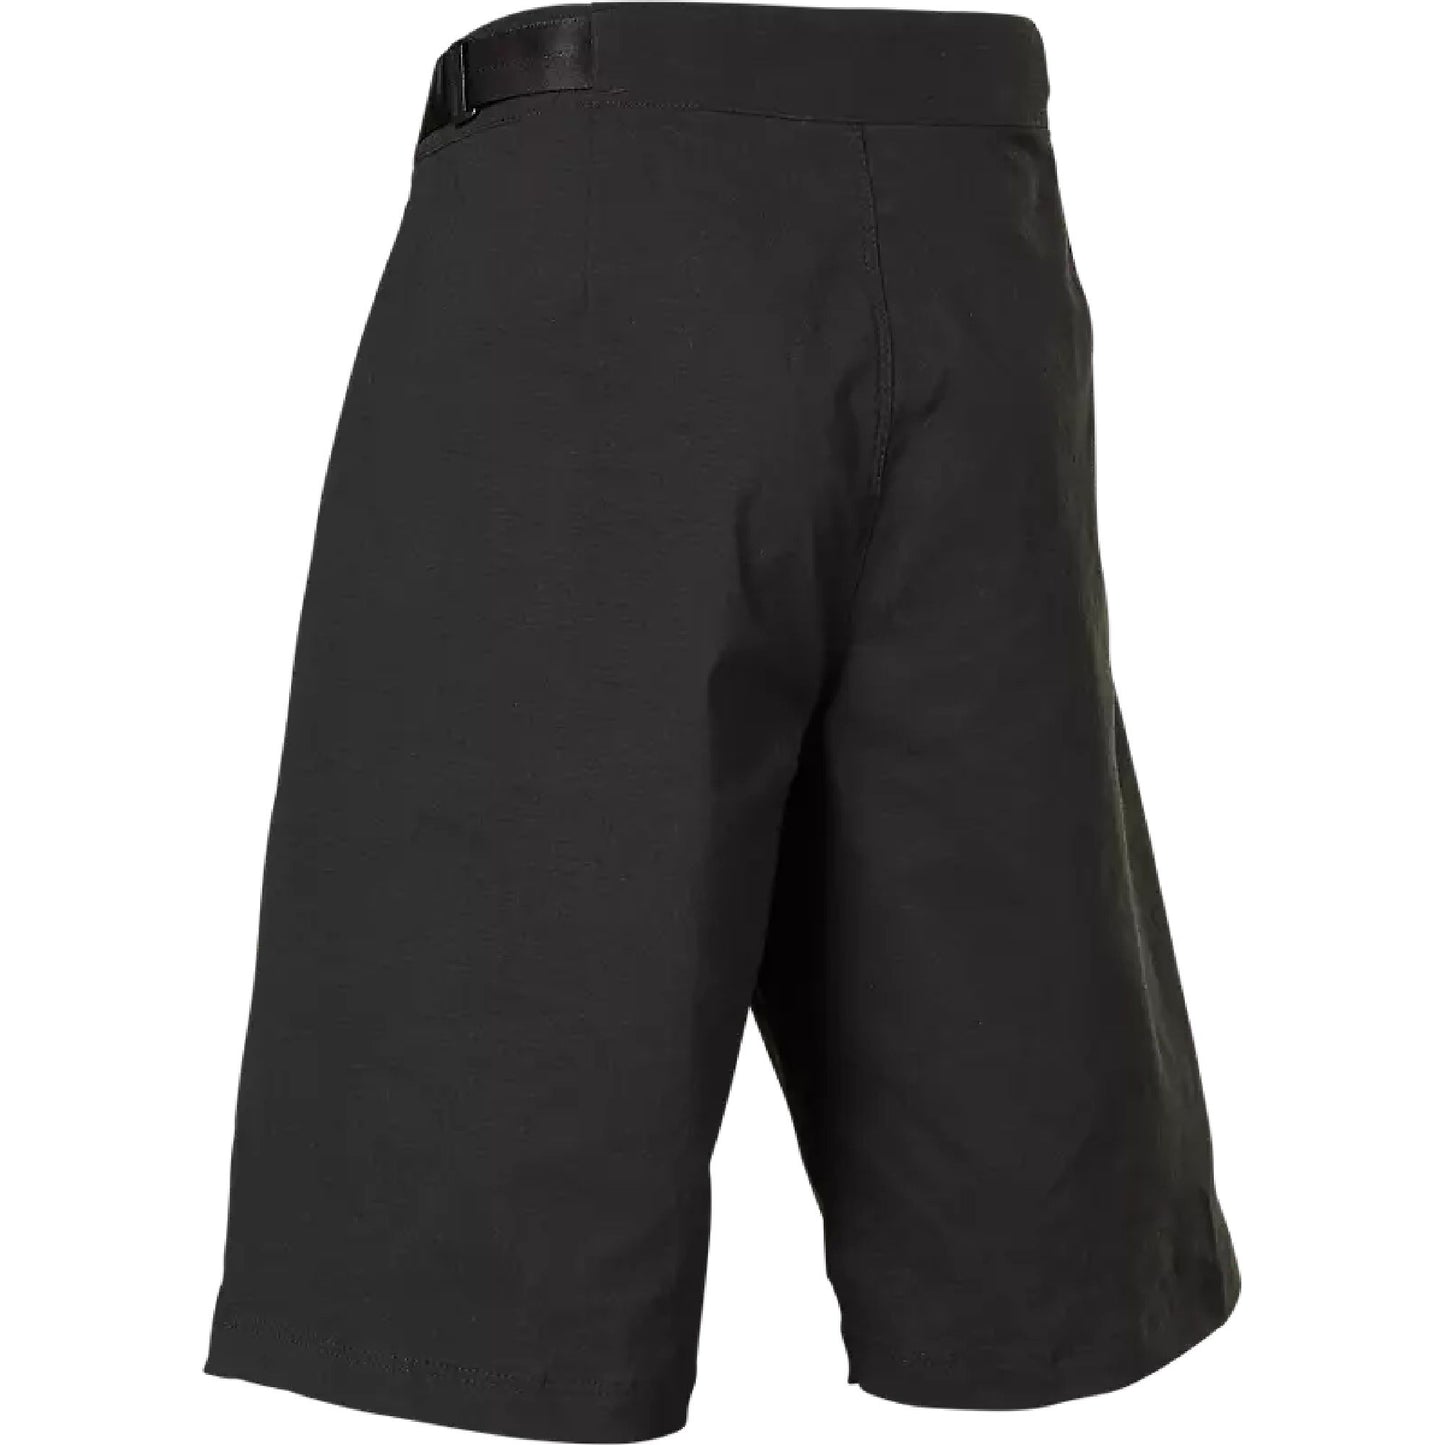 Fox Youth Ranger Short Black Bike Shorts